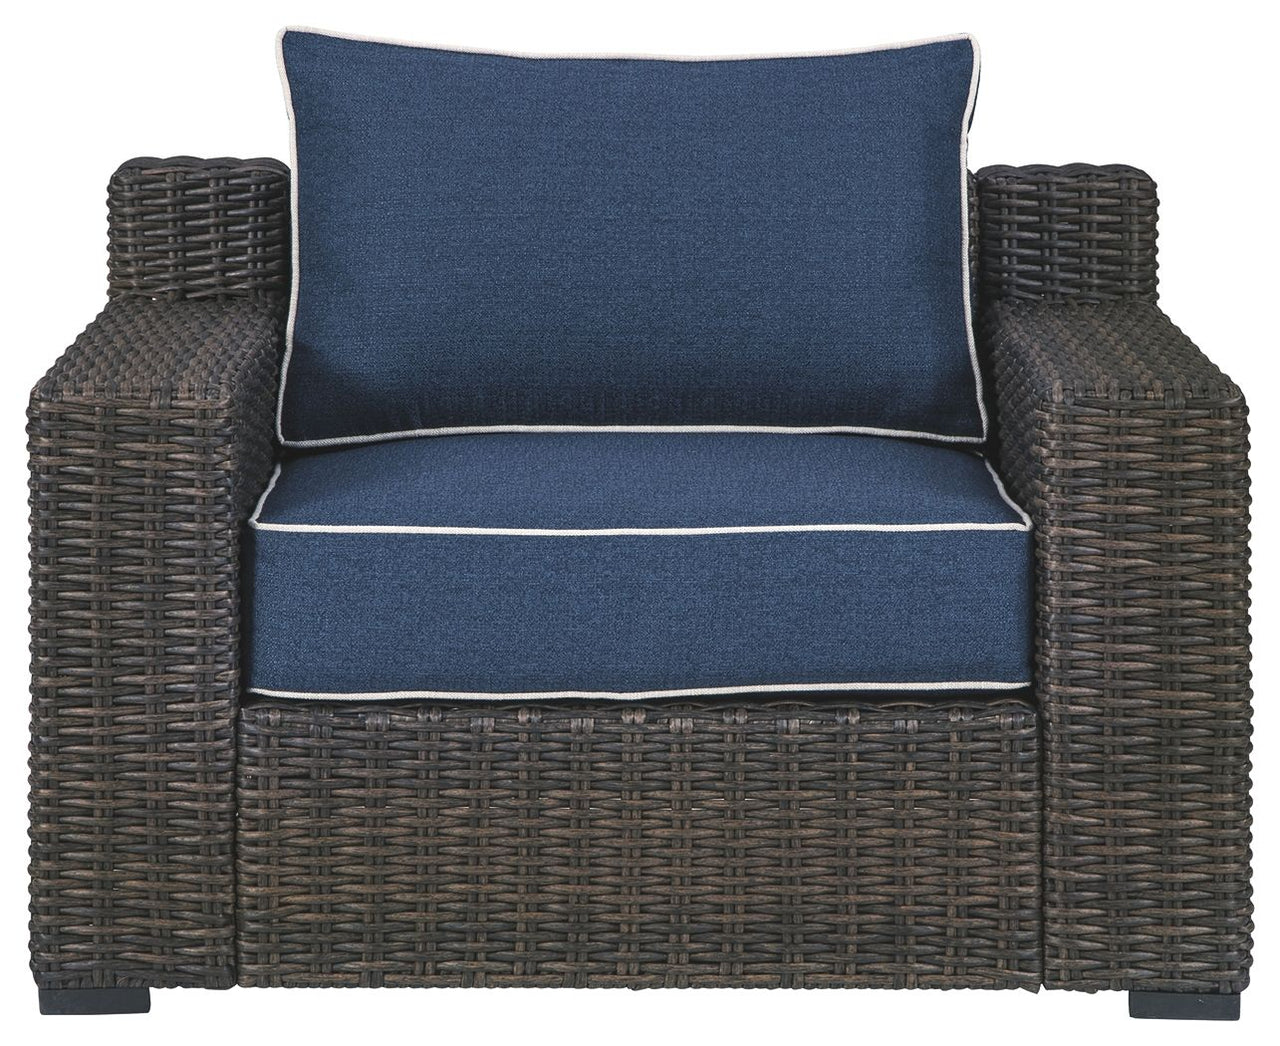 Grasson - Brown / Blue - Lounge Chair W/Cushion Ashley Furniture 